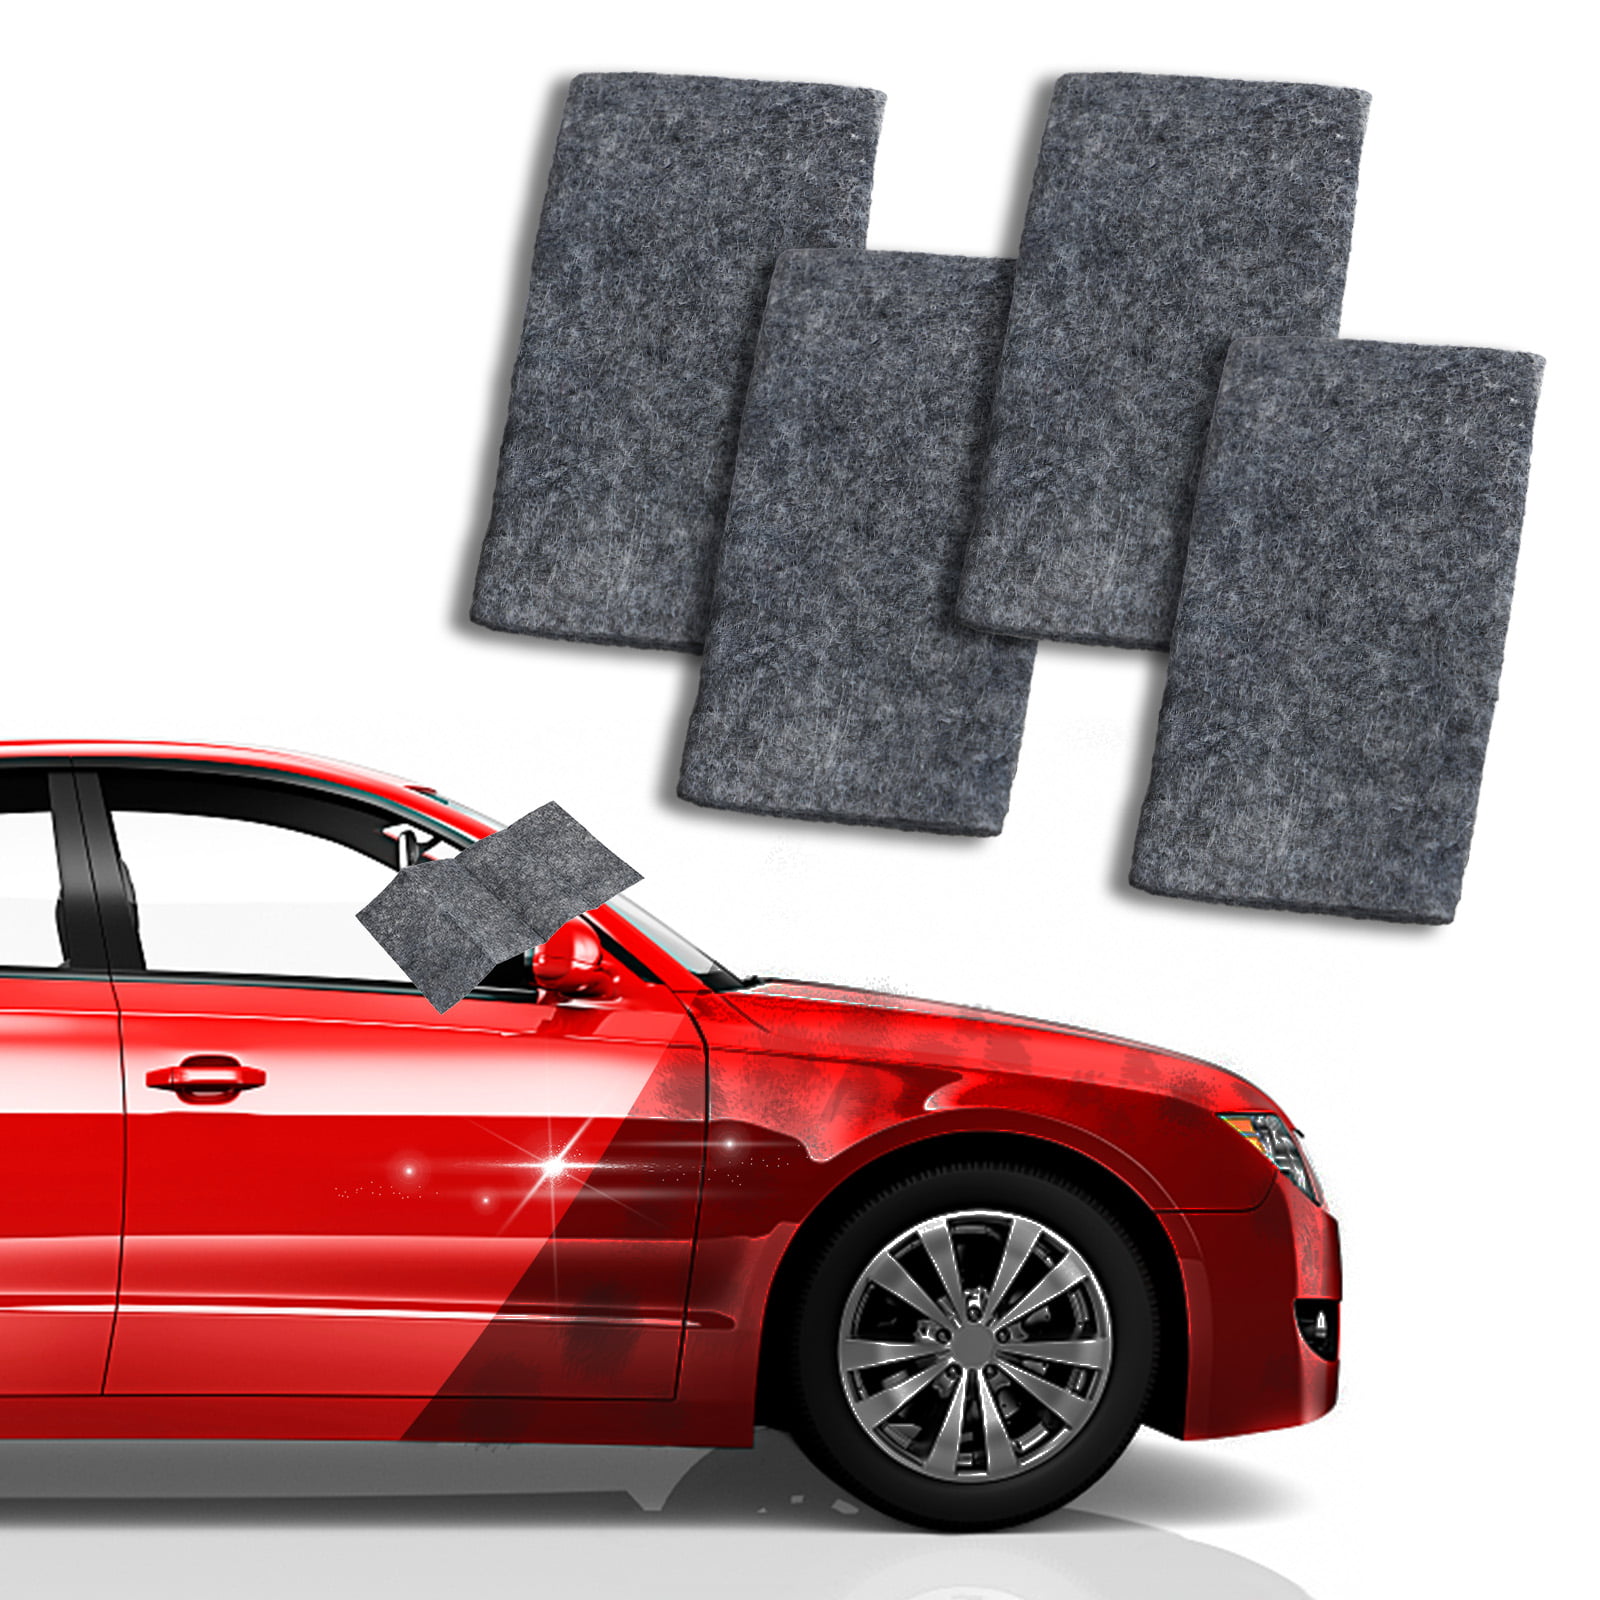 Nano Car Scratch Remover Cloth 3PCS Black Multipurpose Car Scratch Nanomagic Cloth and Light Paint Scratches Remover Scuffs on Surface Car Scratch Remover Kit for Repairing Car Scratches 